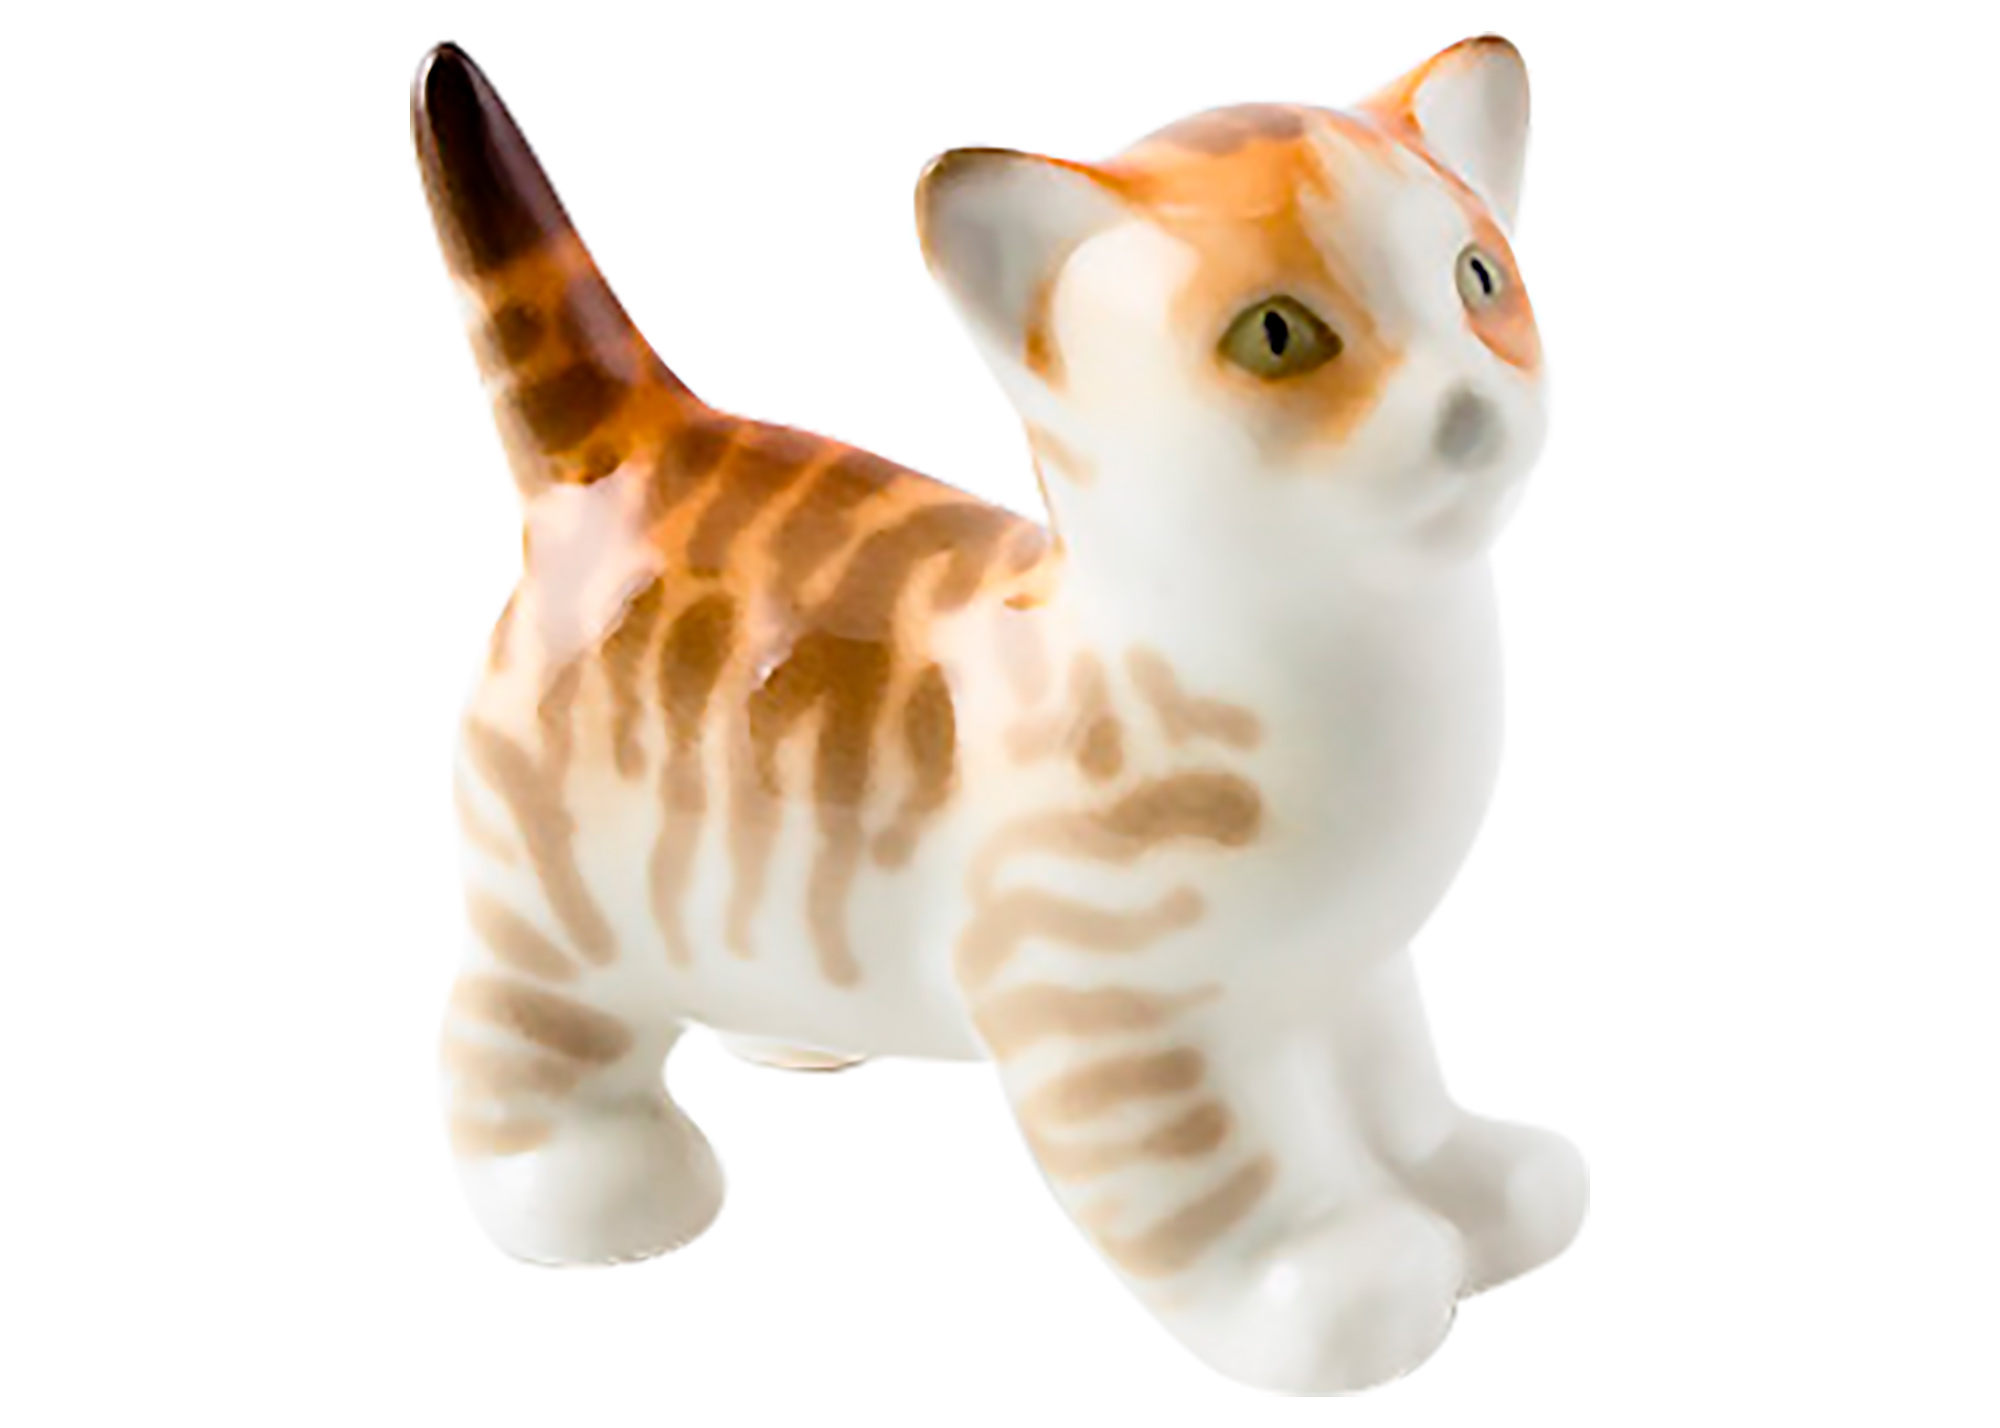 Buy Little Kitten Standing Porcelain Figurine at GoldenCockerel.com